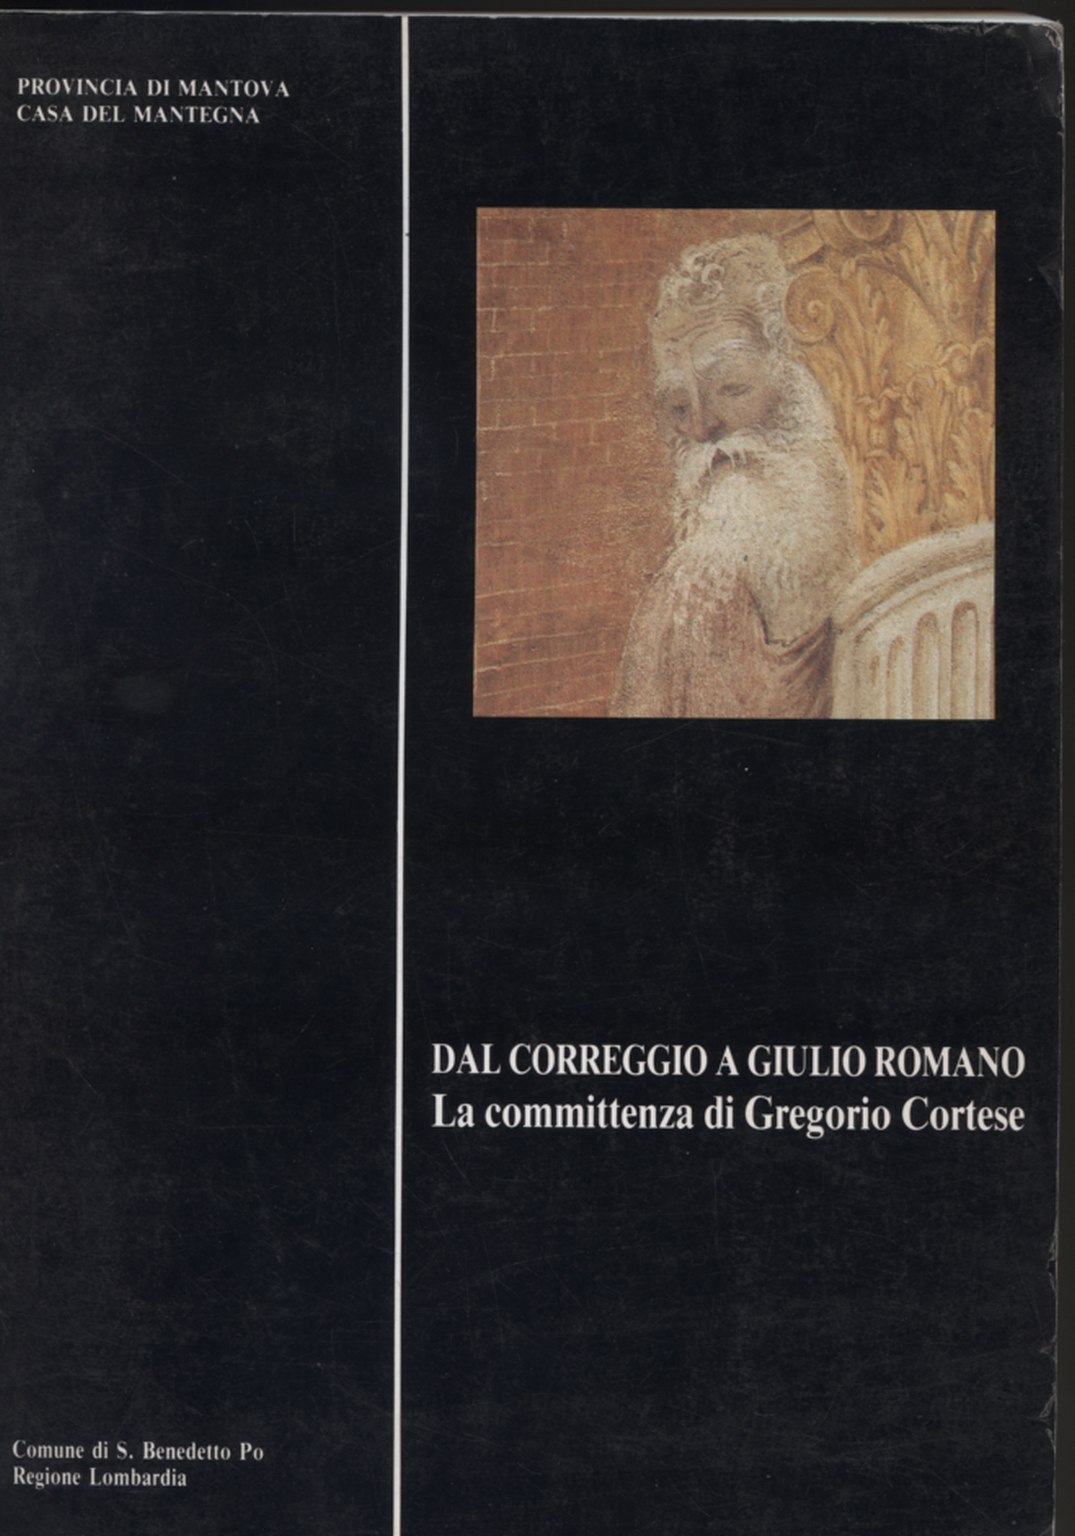 From Correggio to Giulio Romano. The comm